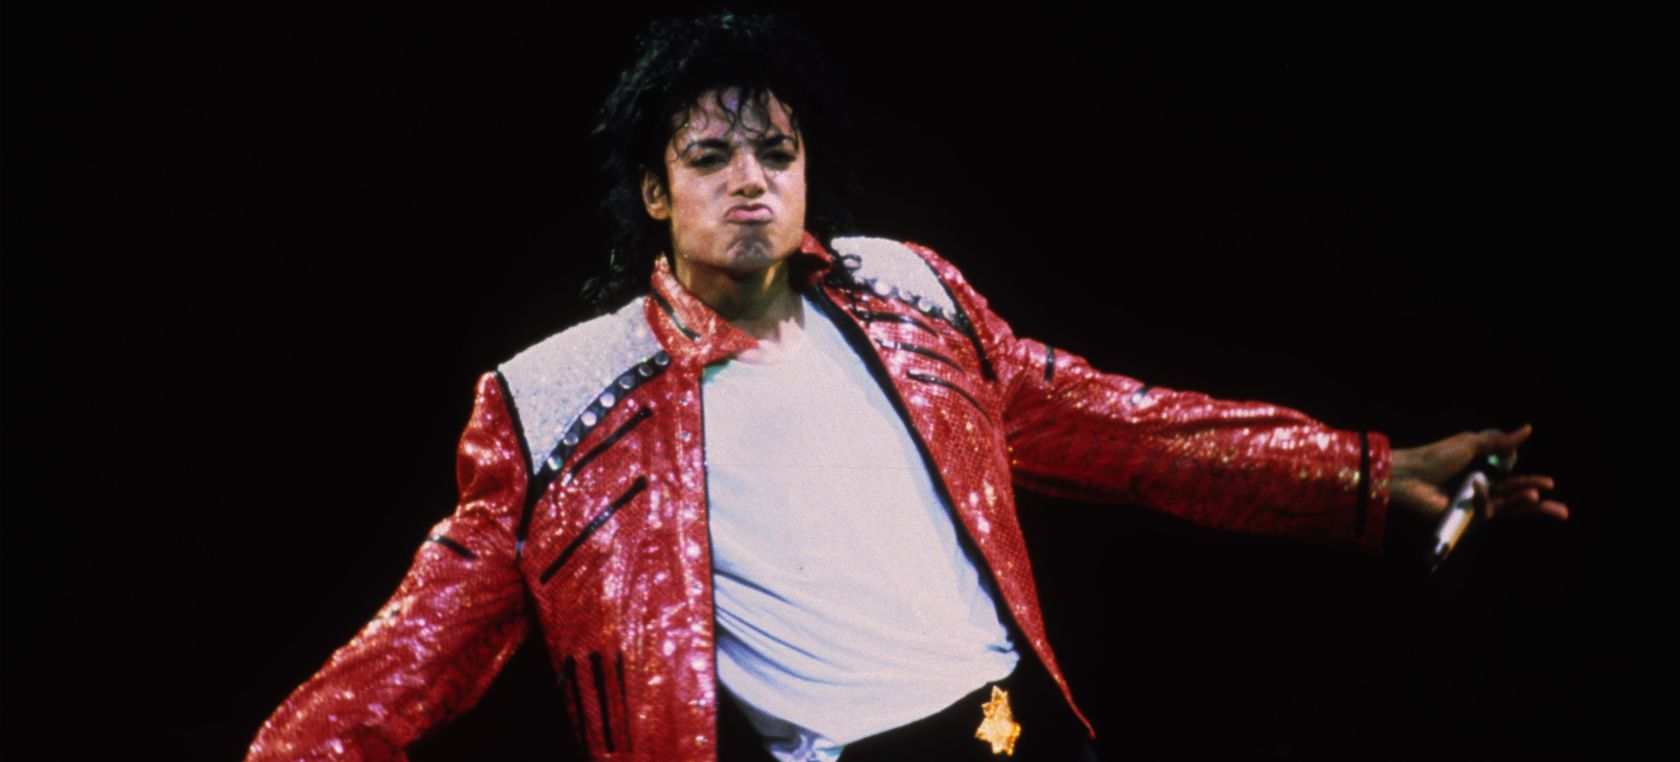 El musical de Michael Jackson saldrá de gira en 2023